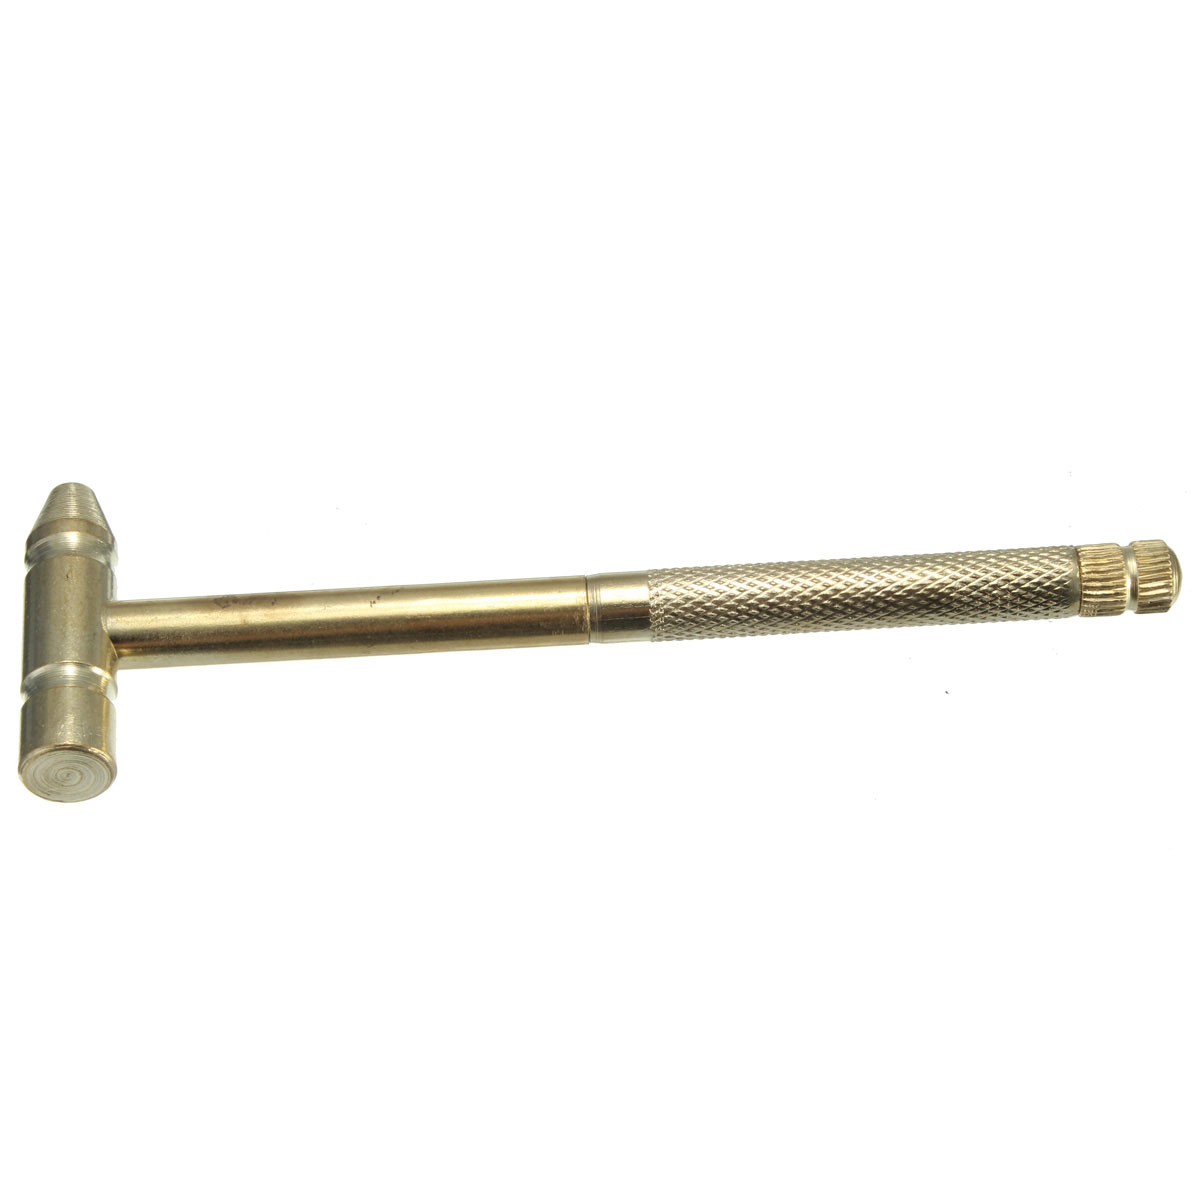 Micro-Mini-Copper-Hammer-Portable-4-Kinds-Models-Screwdrivers-DIY-Tools-977136